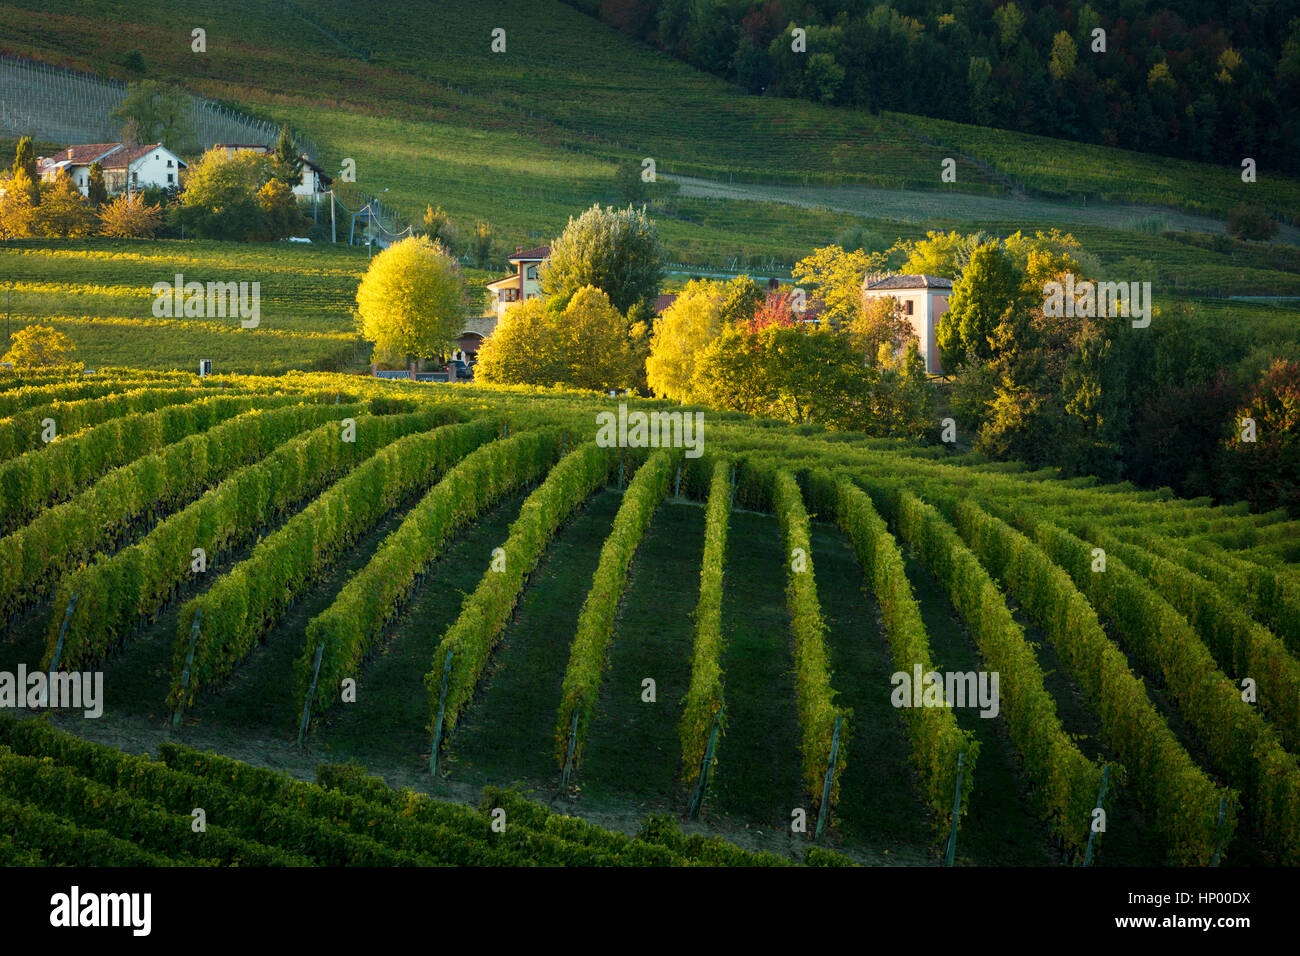 Autumn evening sunlight on the vineyards near Barolo, Piemonte, Italy Stock Photo